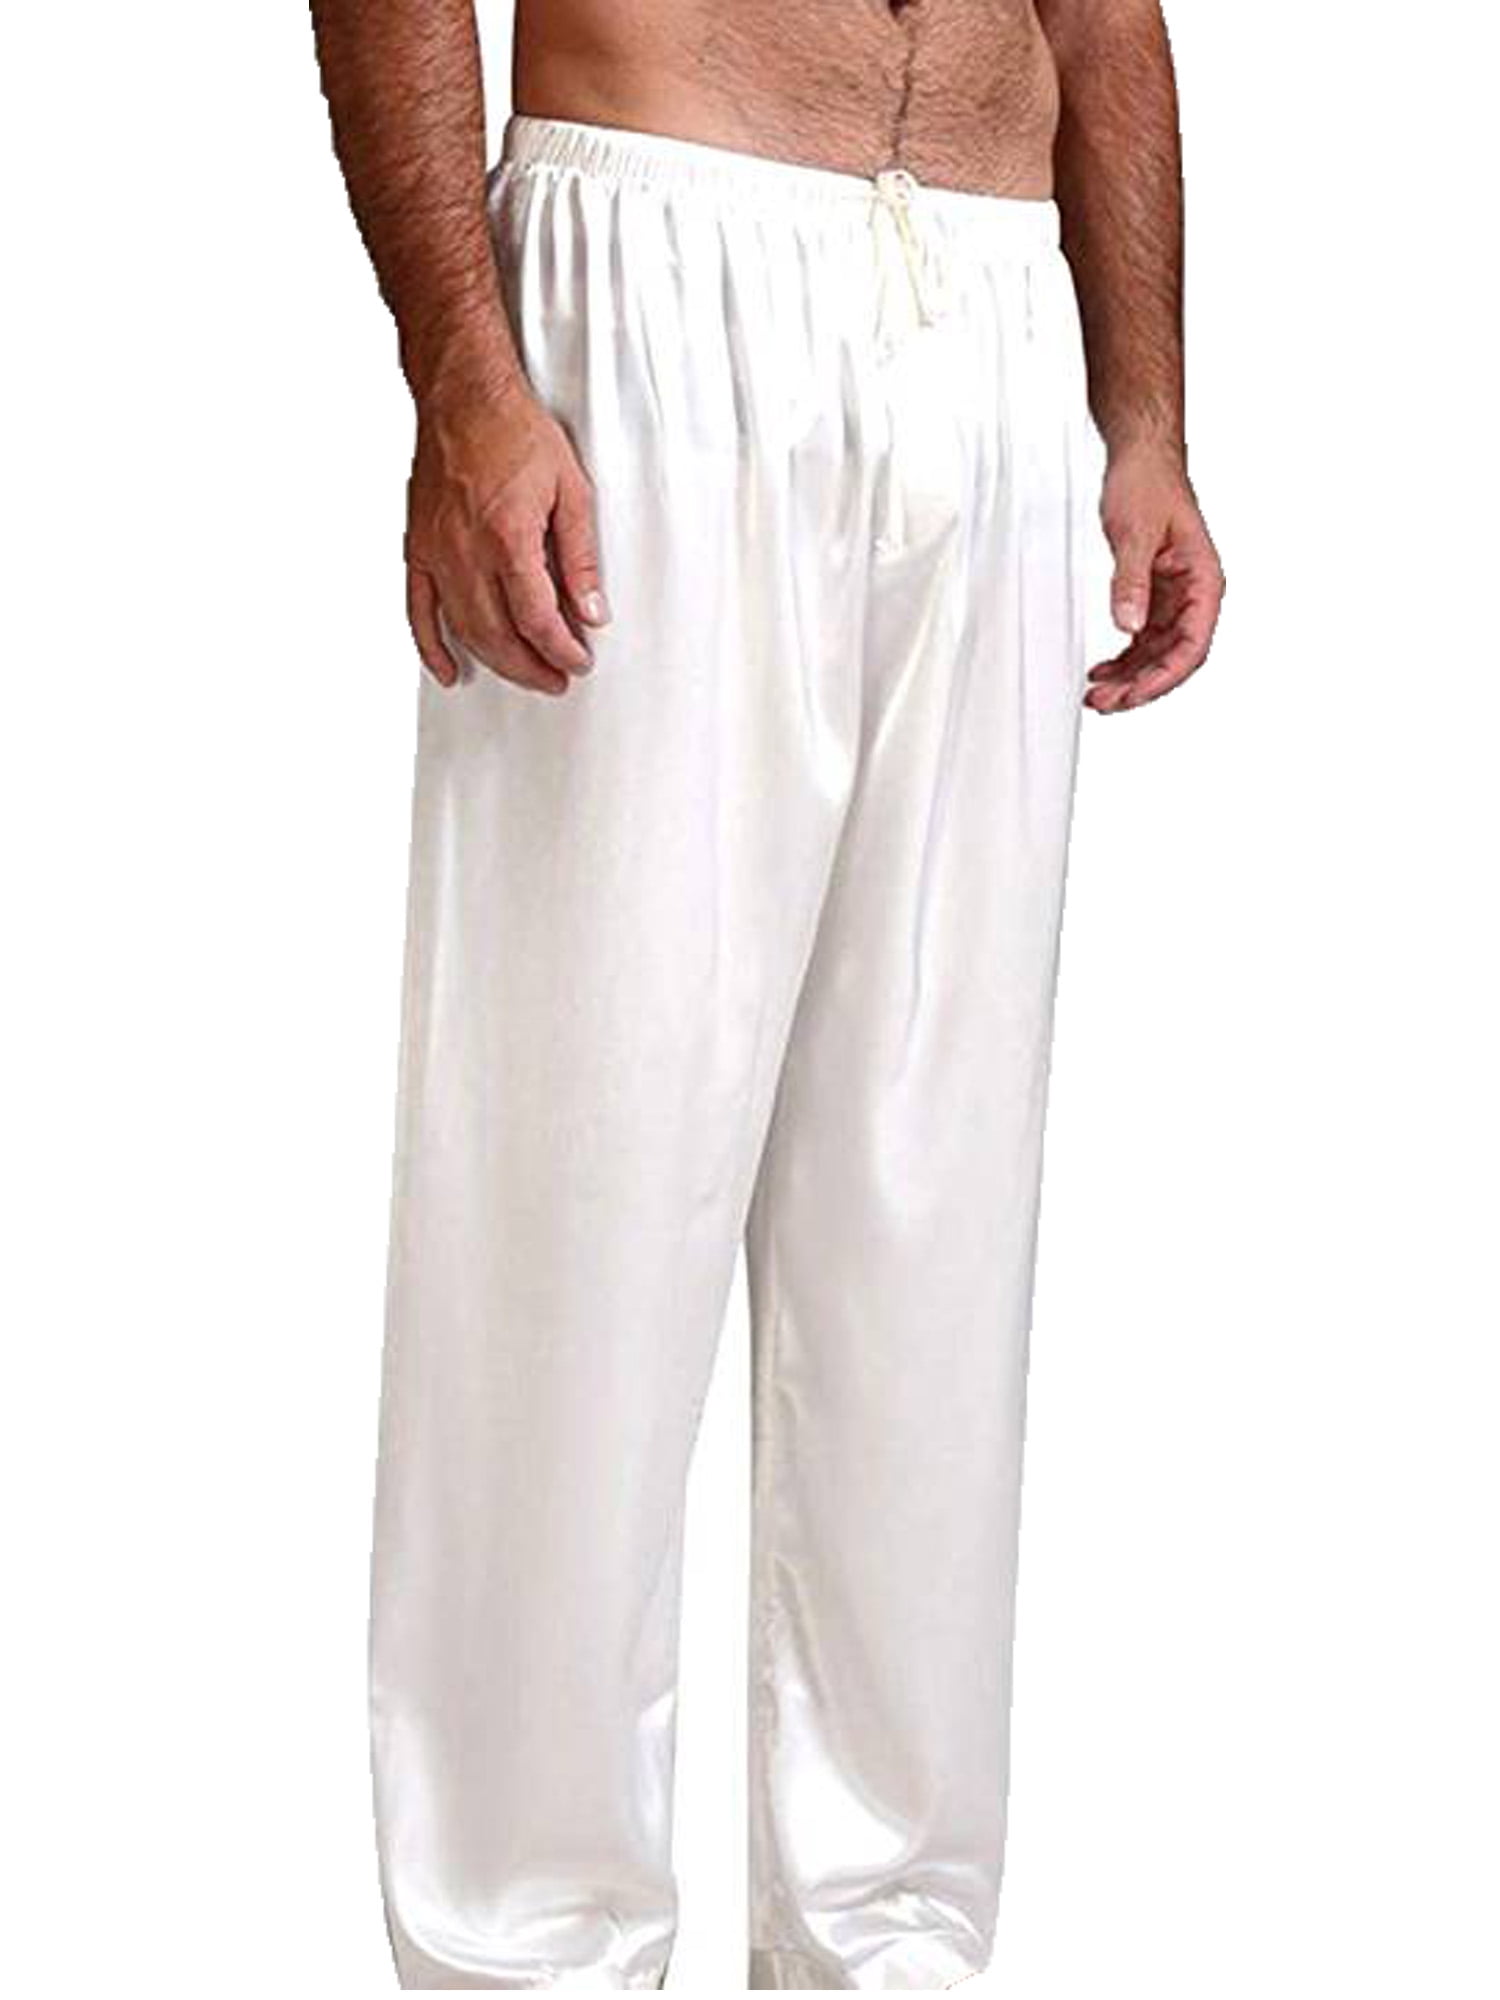 Diconna - Diconna Men Pajamas Nightwear Lounge Pant Pyjamas White M ...